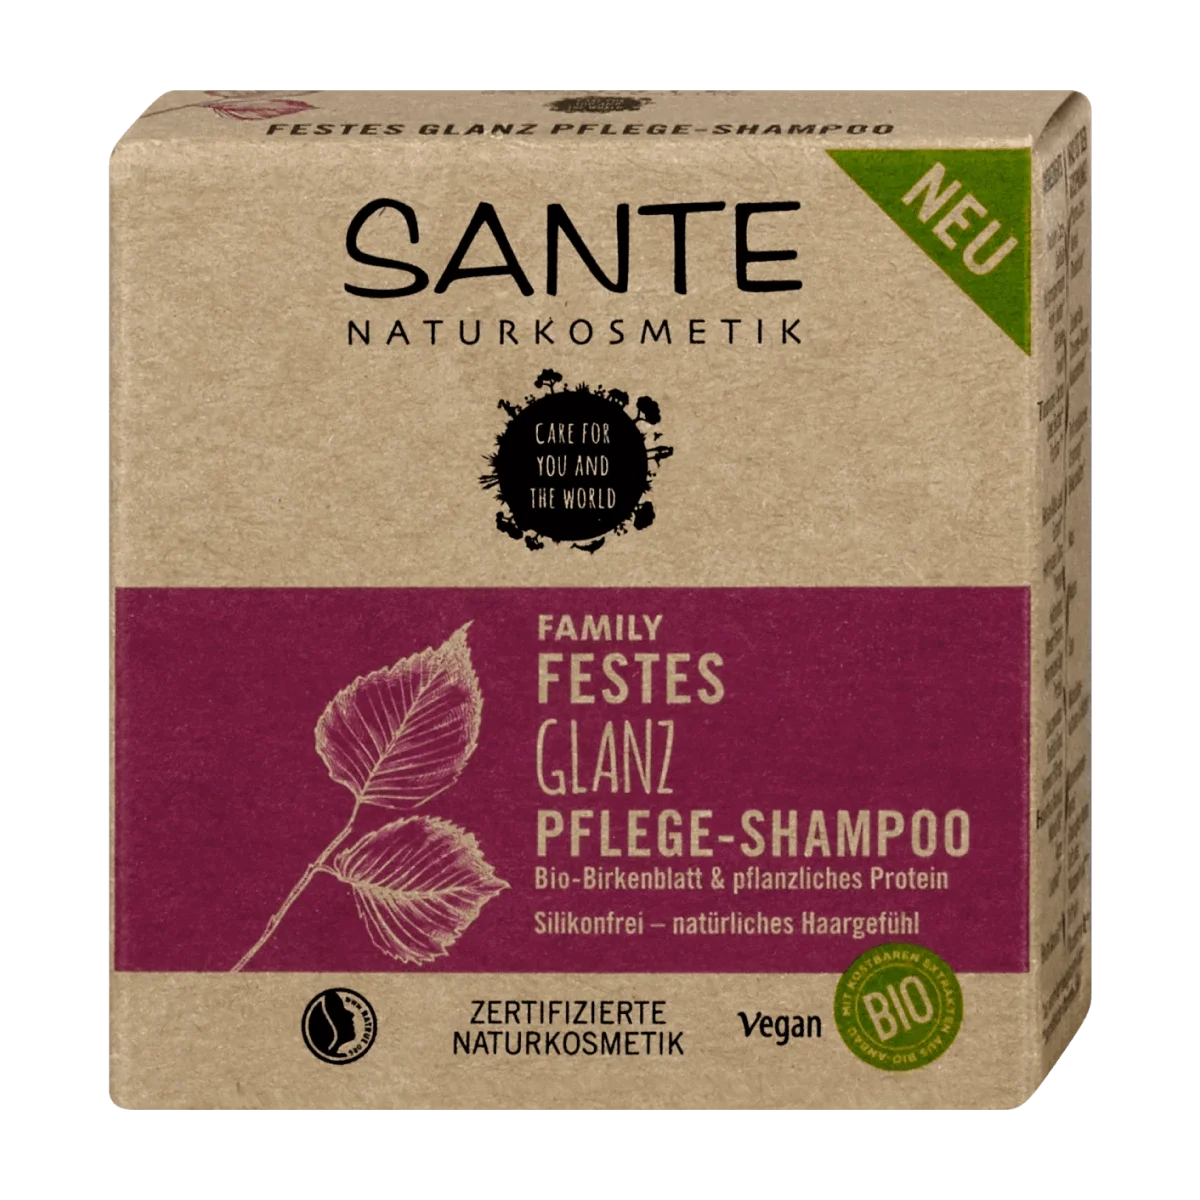 SANTE NATURKOSMETIK Festes Shampoo Glanz Bio-Birkenblatt & Pflanzliches Protein, 60 g